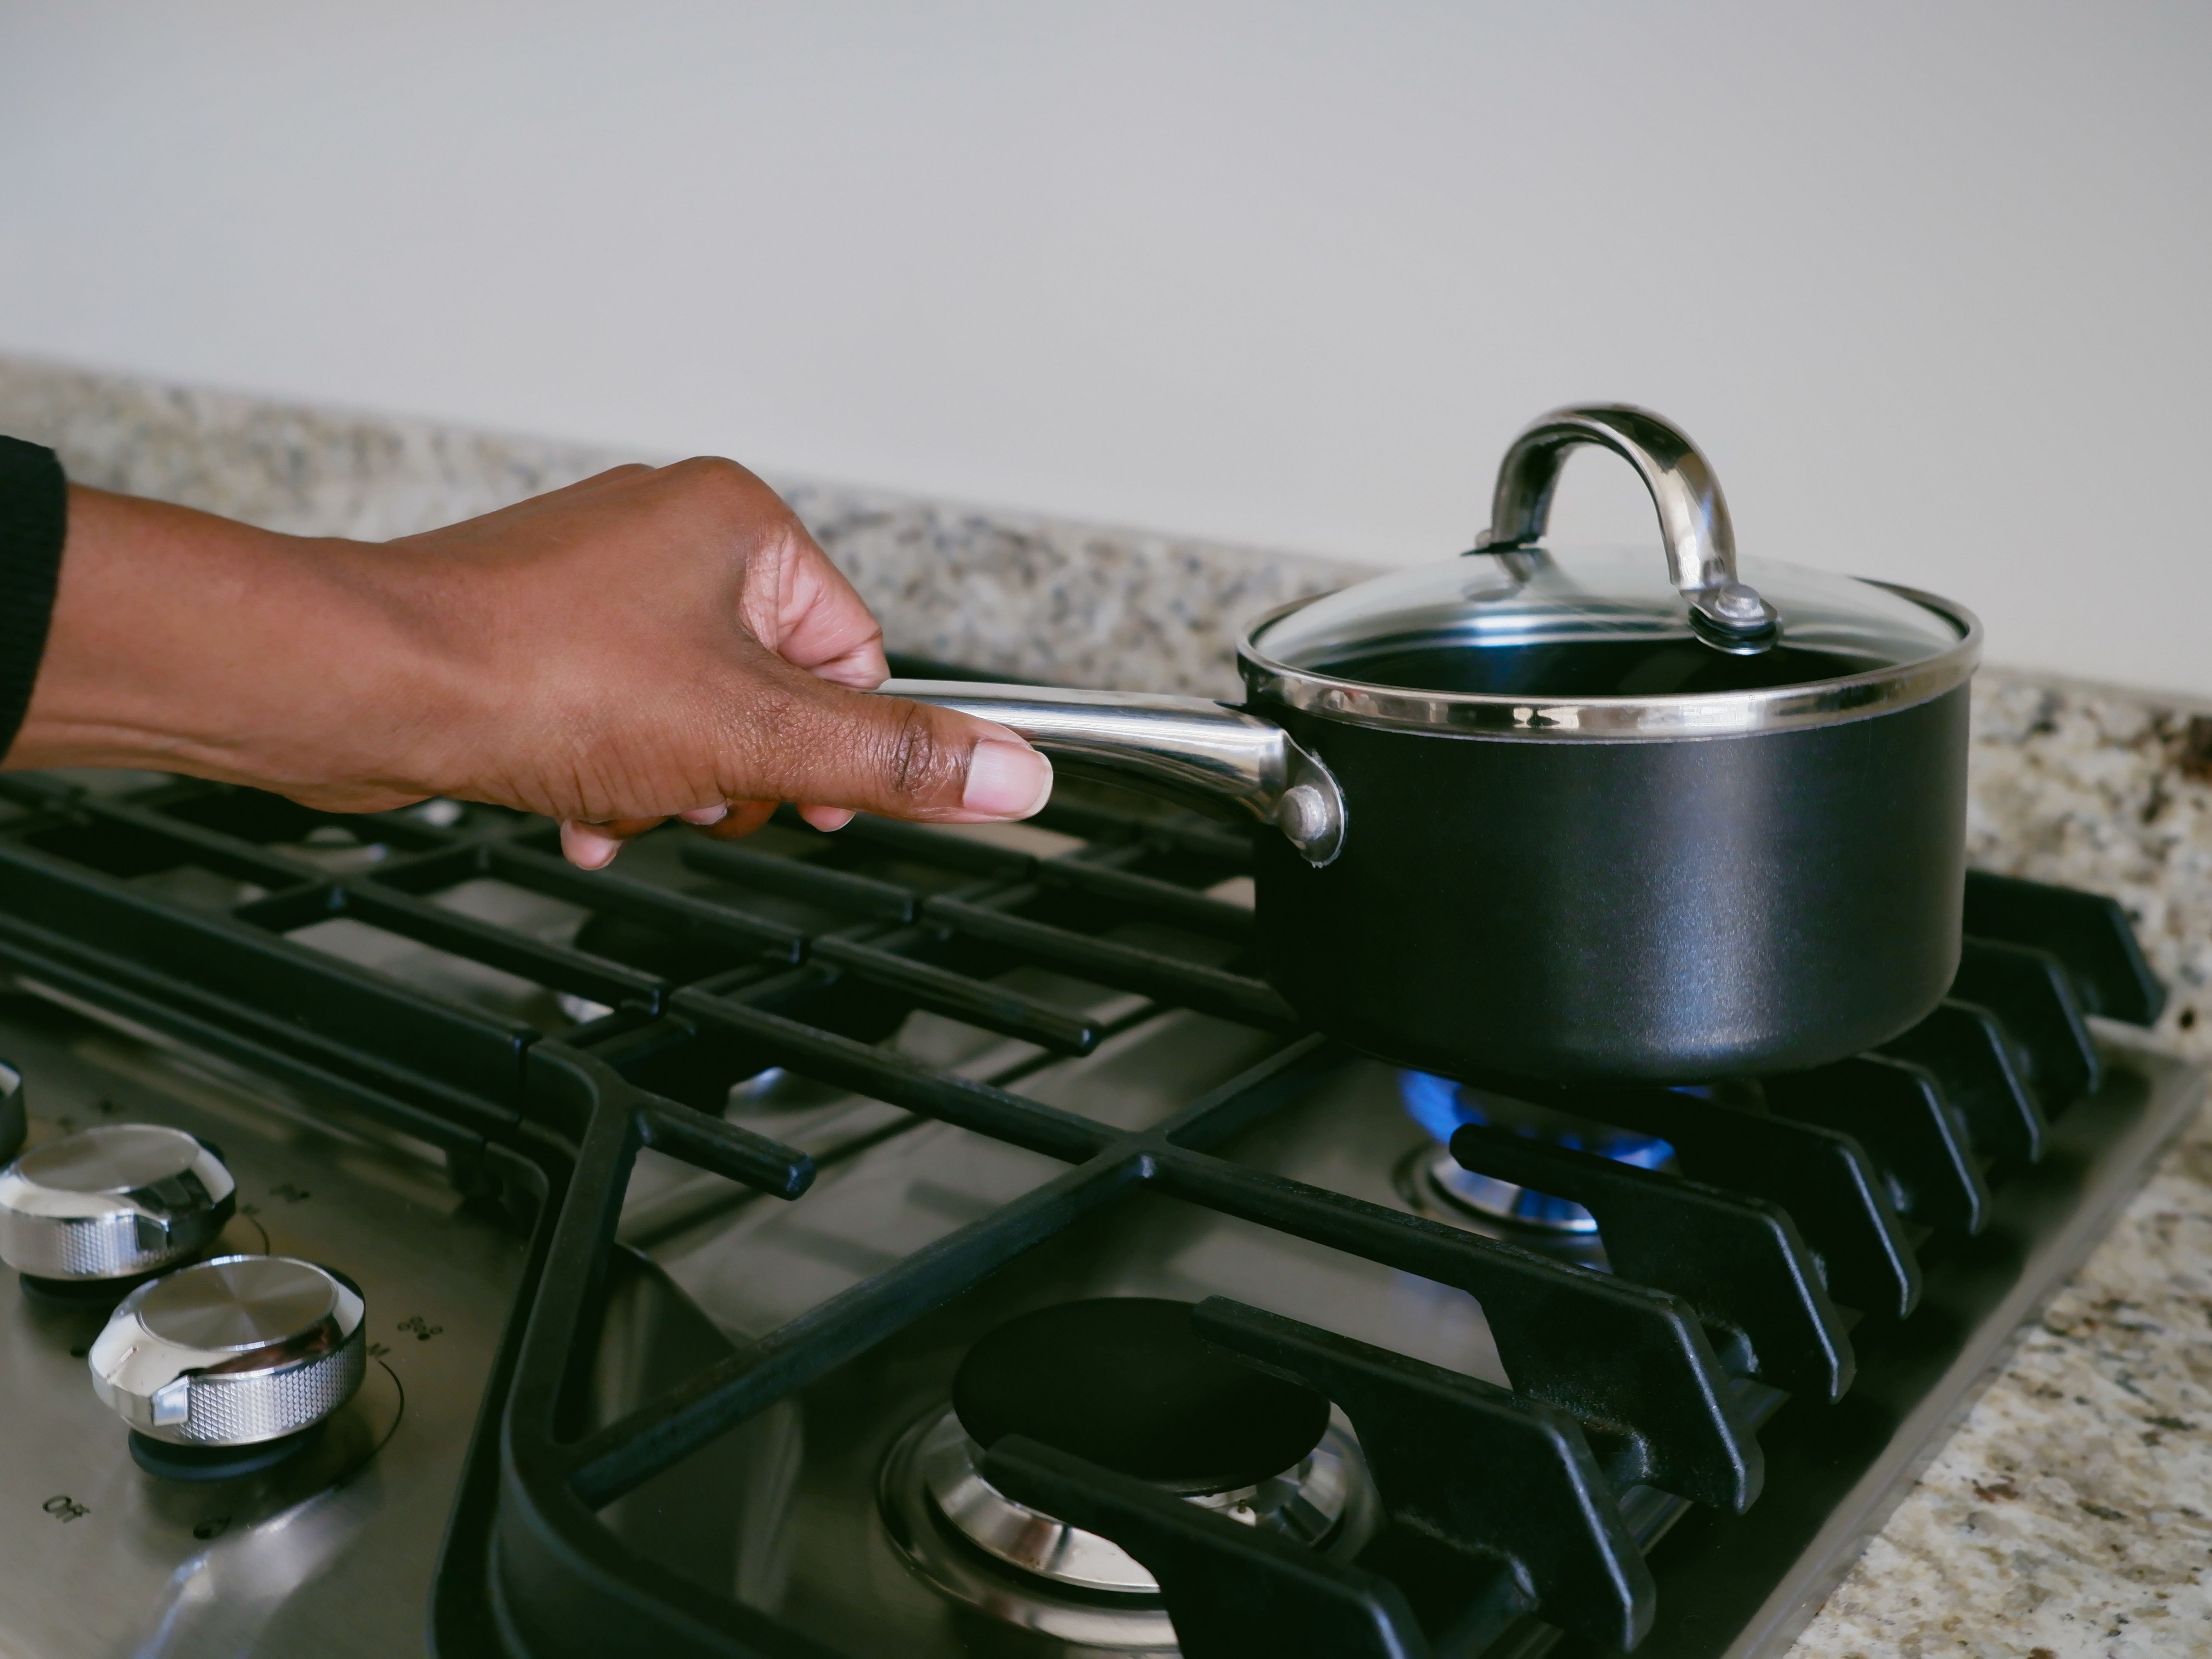 Votre cuisinière à gaz peut vous rendre malade, même éteinte !